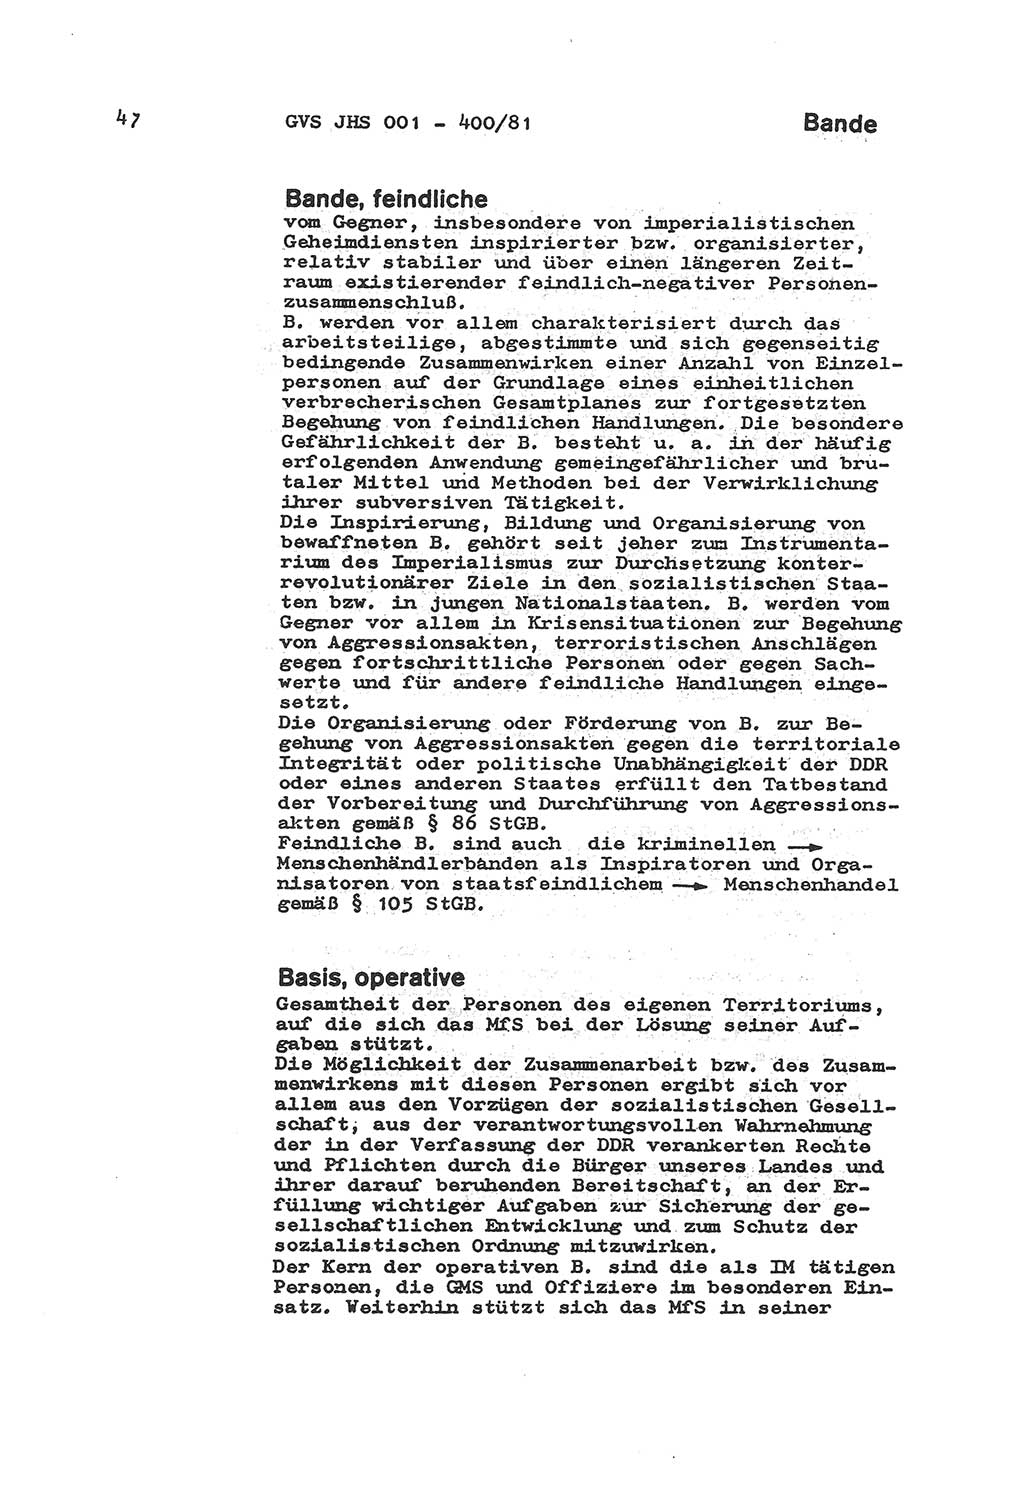 Wörterbuch der politisch-operativen Arbeit, Ministerium für Staatssicherheit (MfS) [Deutsche Demokratische Republik (DDR)], Juristische Hochschule (JHS), Geheime Verschlußsache (GVS) o001-400/81, Potsdam 1985, Blatt 47 (Wb. pol.-op. Arb. MfS DDR JHS GVS o001-400/81 1985, Bl. 47)